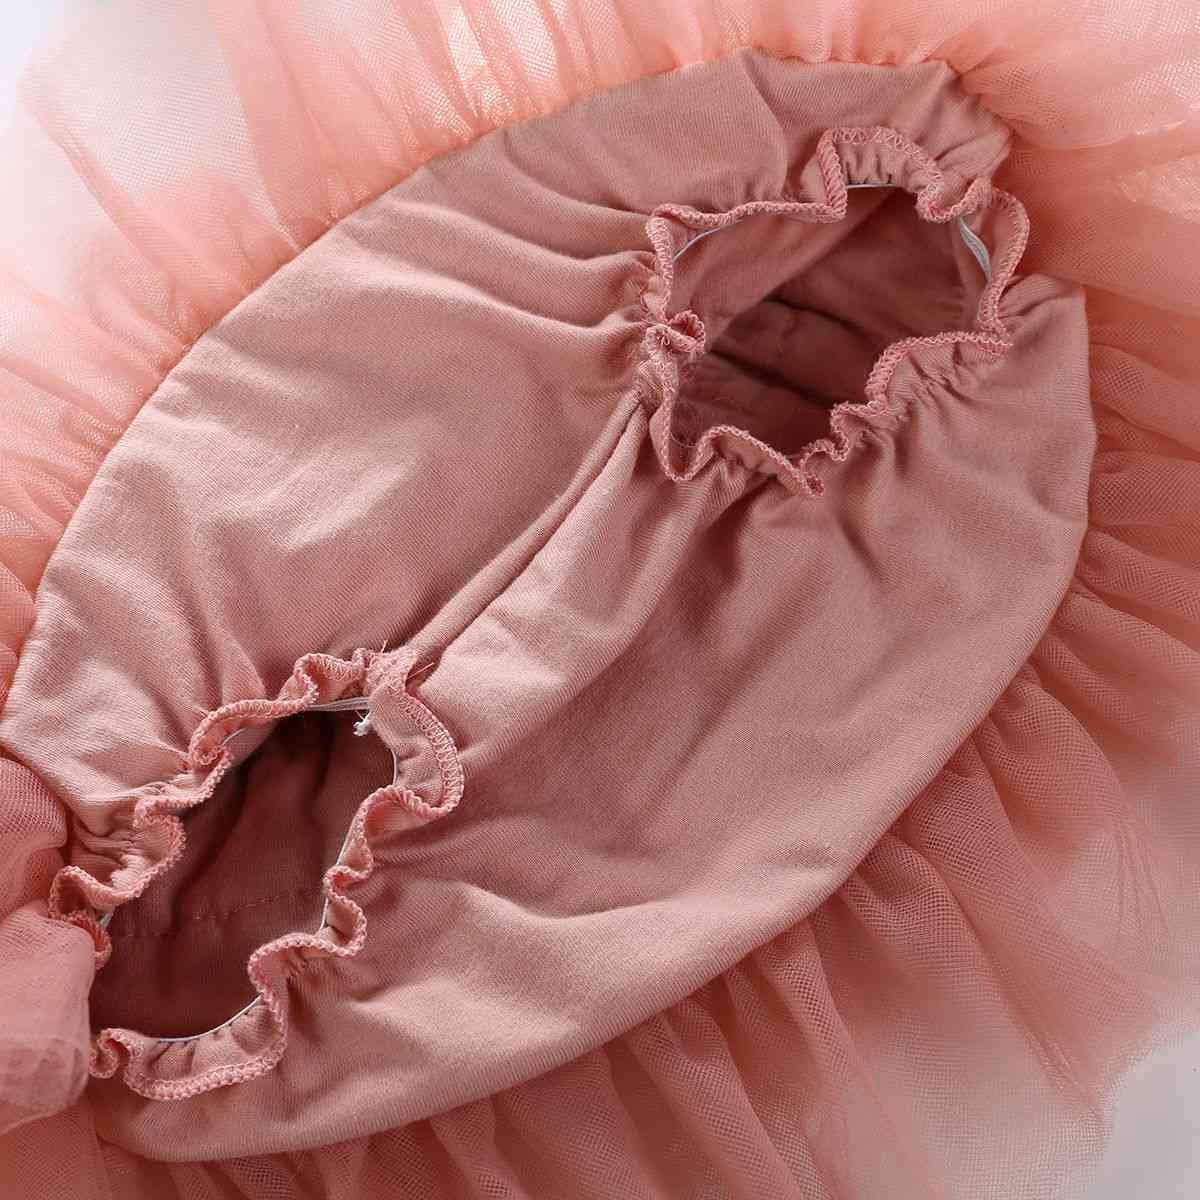 Bébé filles couche ballet danse pettiskirt jupe tutu accessoires photo